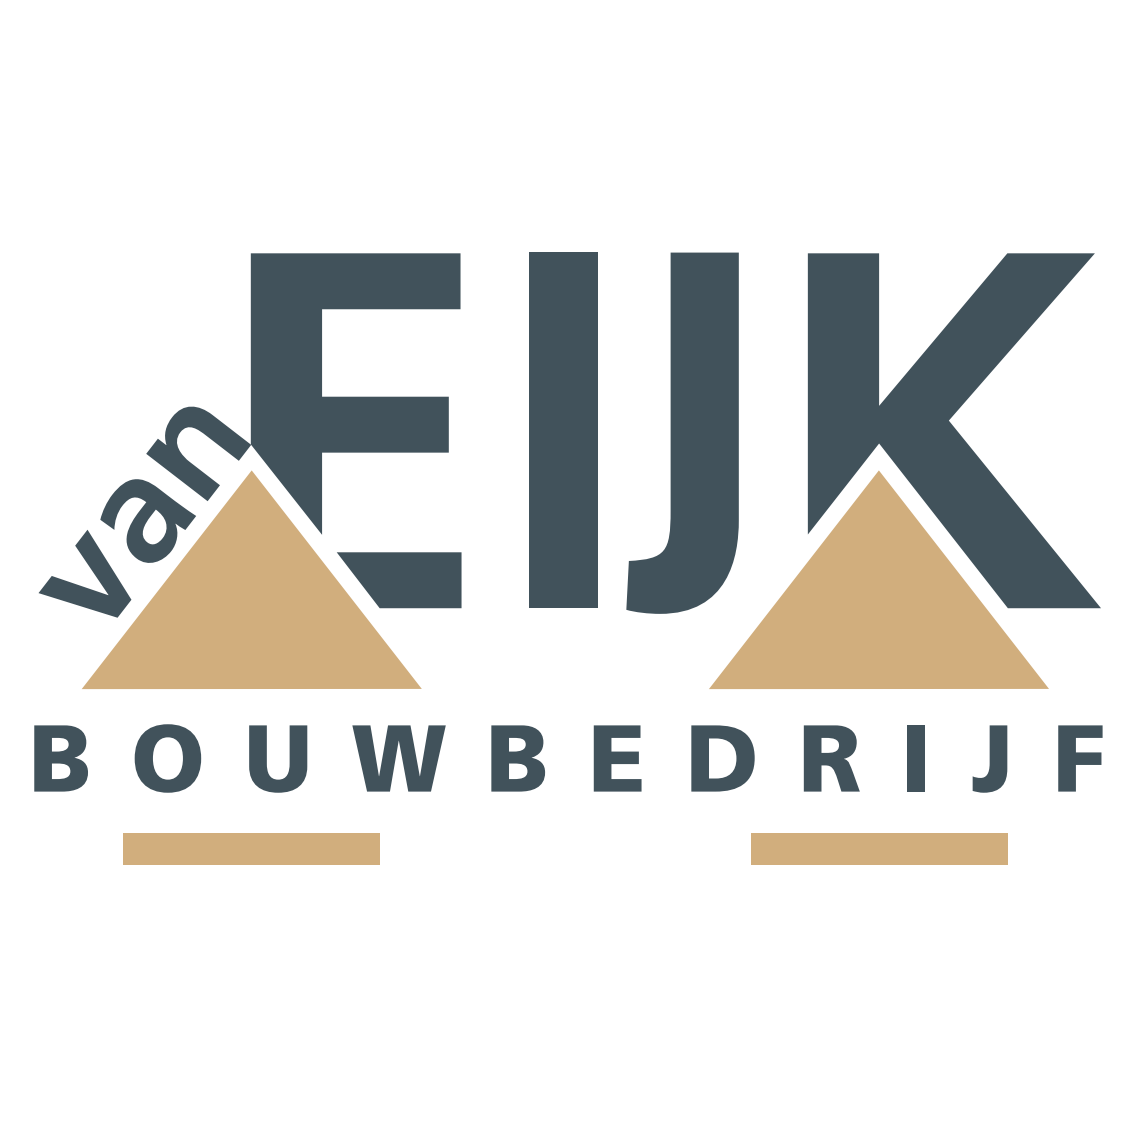 Bouwbedrijf van Eijk Logo